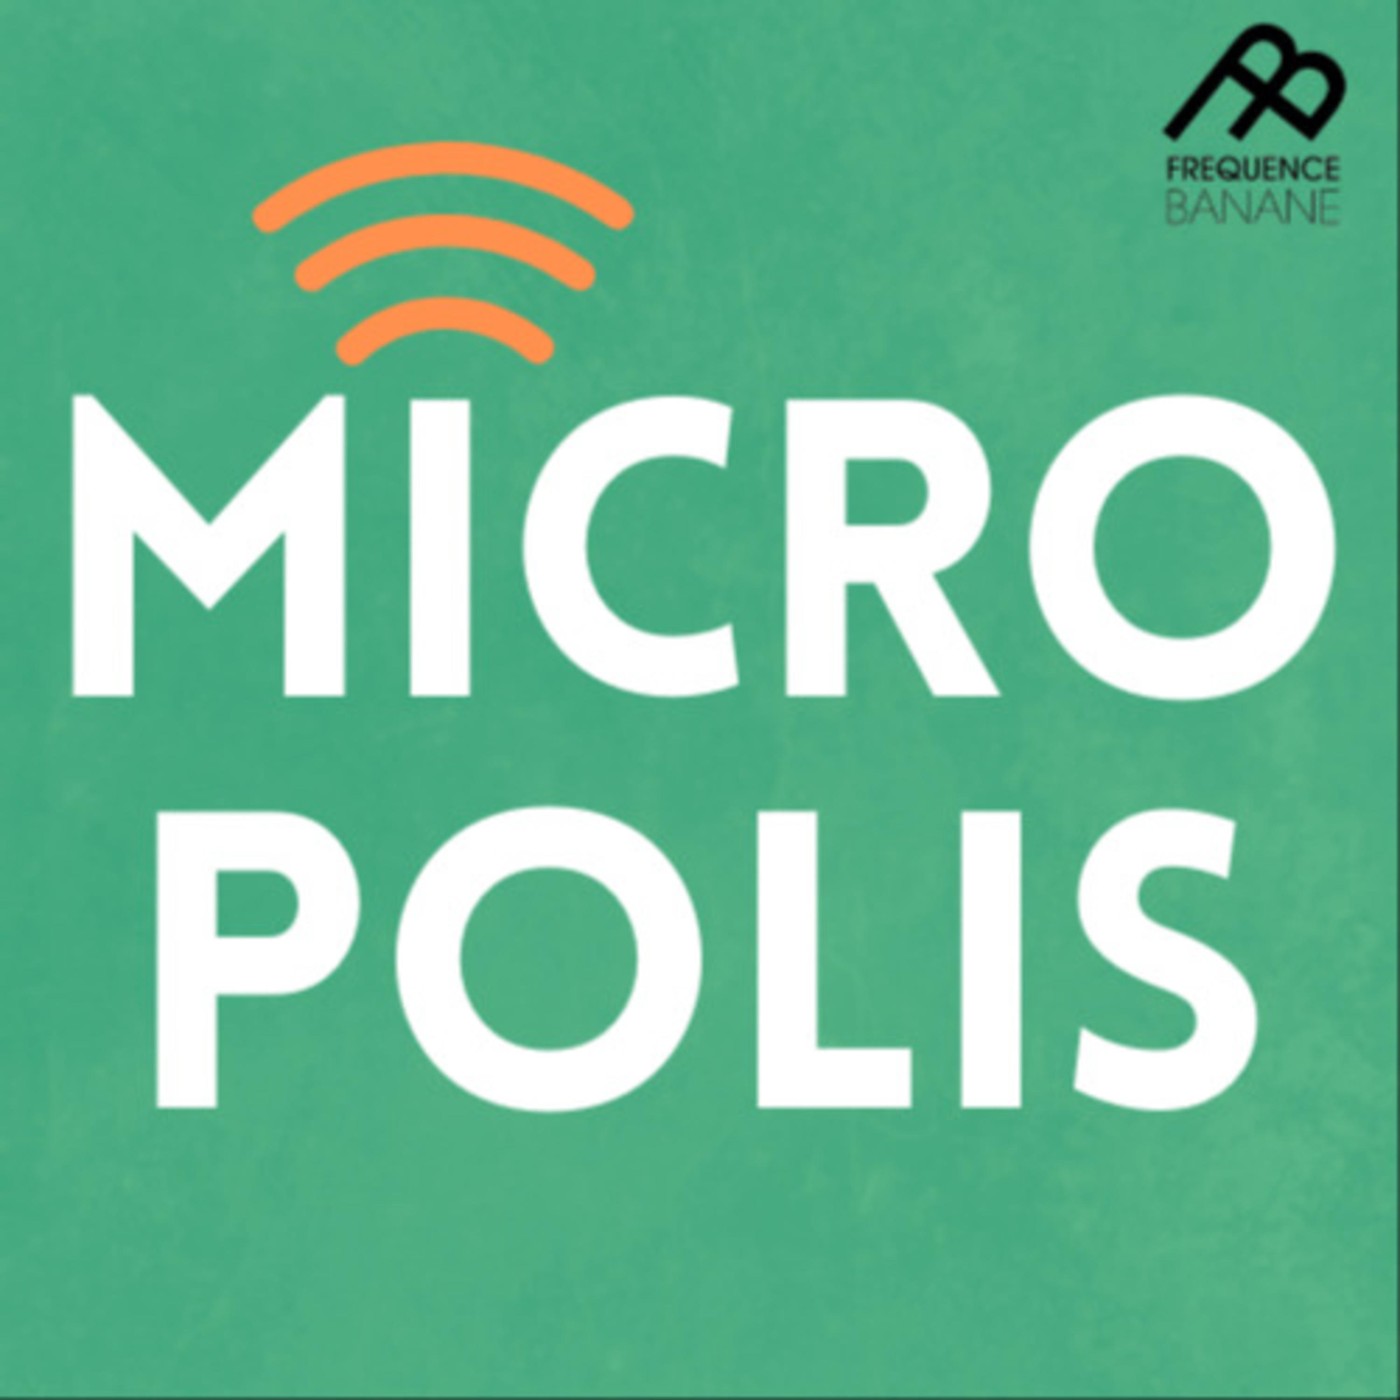 Micropolis du 27/02/2020 - Discussions Juteuses - Le cinéma